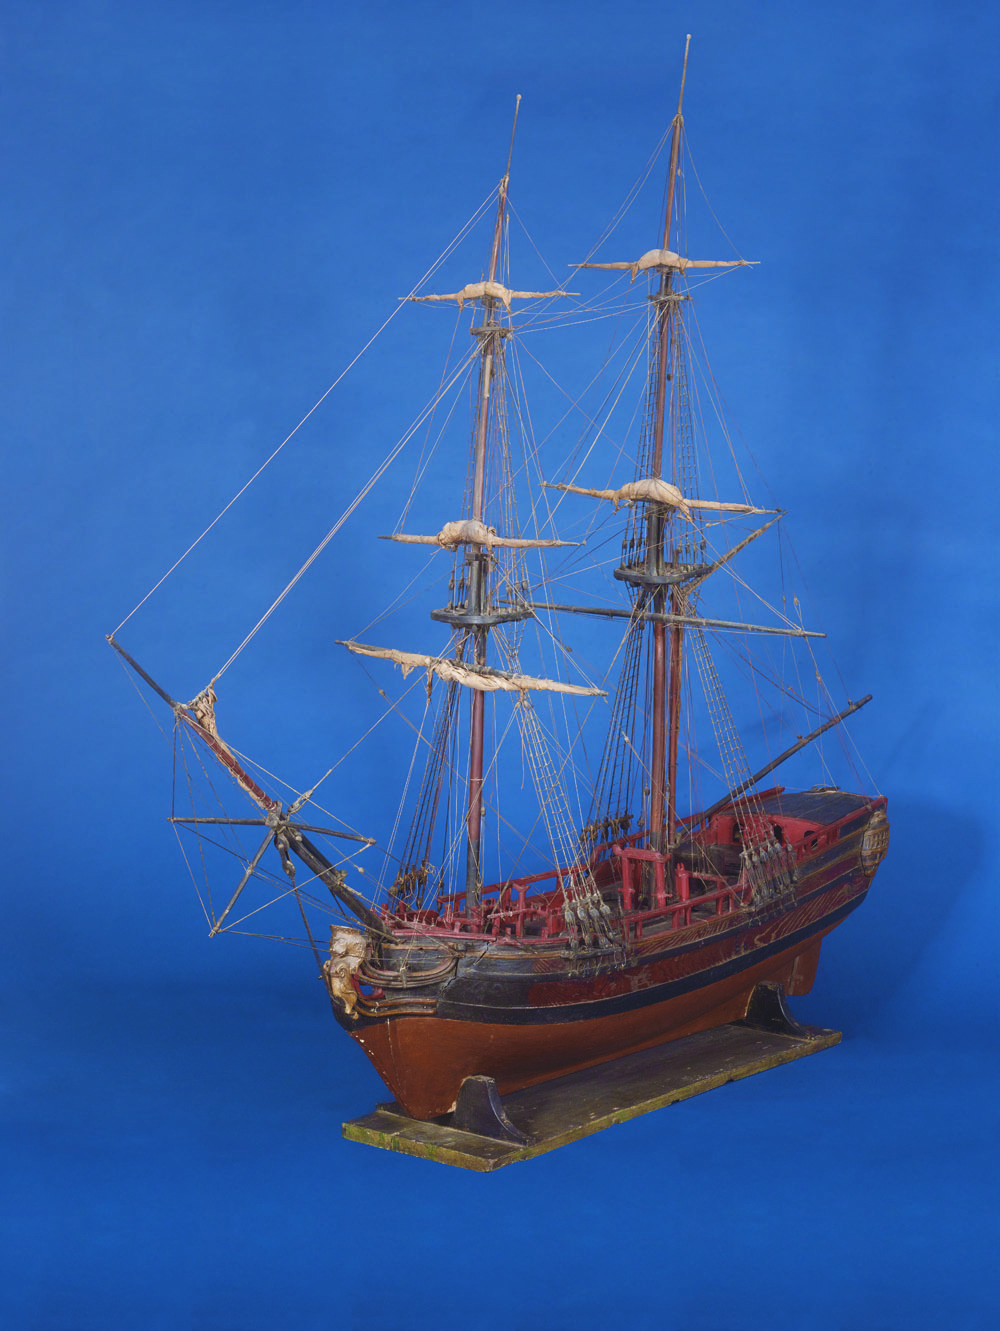 Le FA maquette dun brick utilisé pour le commerce au long cours et la traite négrière Honfleur musée de la Marine Illustria